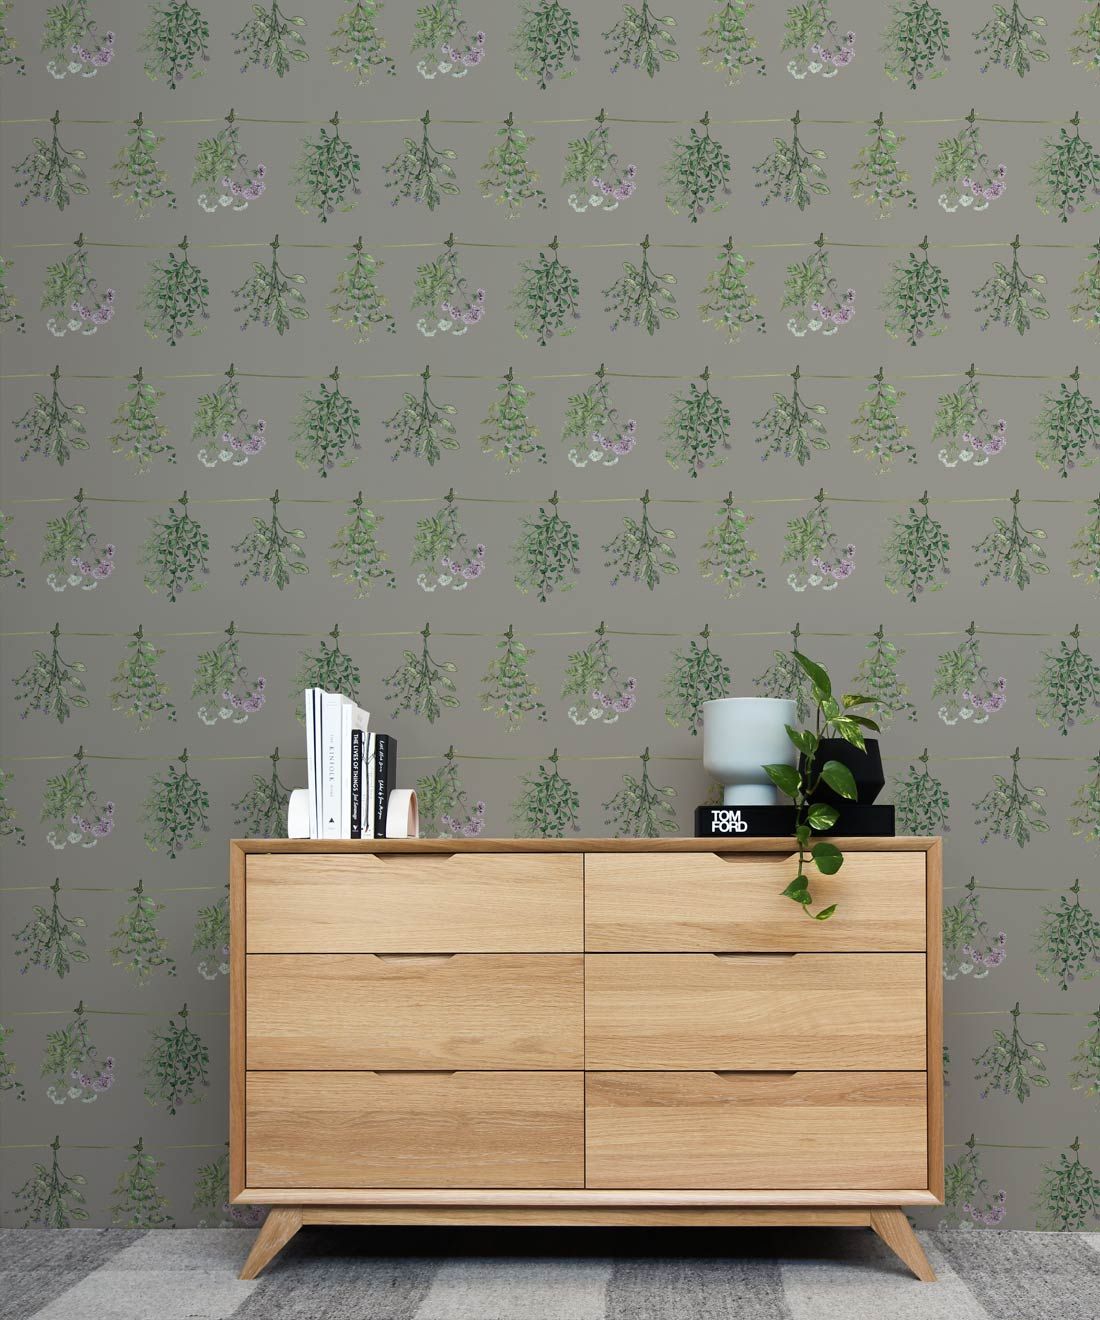 Dried Herbs Wallpaper • Hanging Pantry Wallpaper • Milton & King